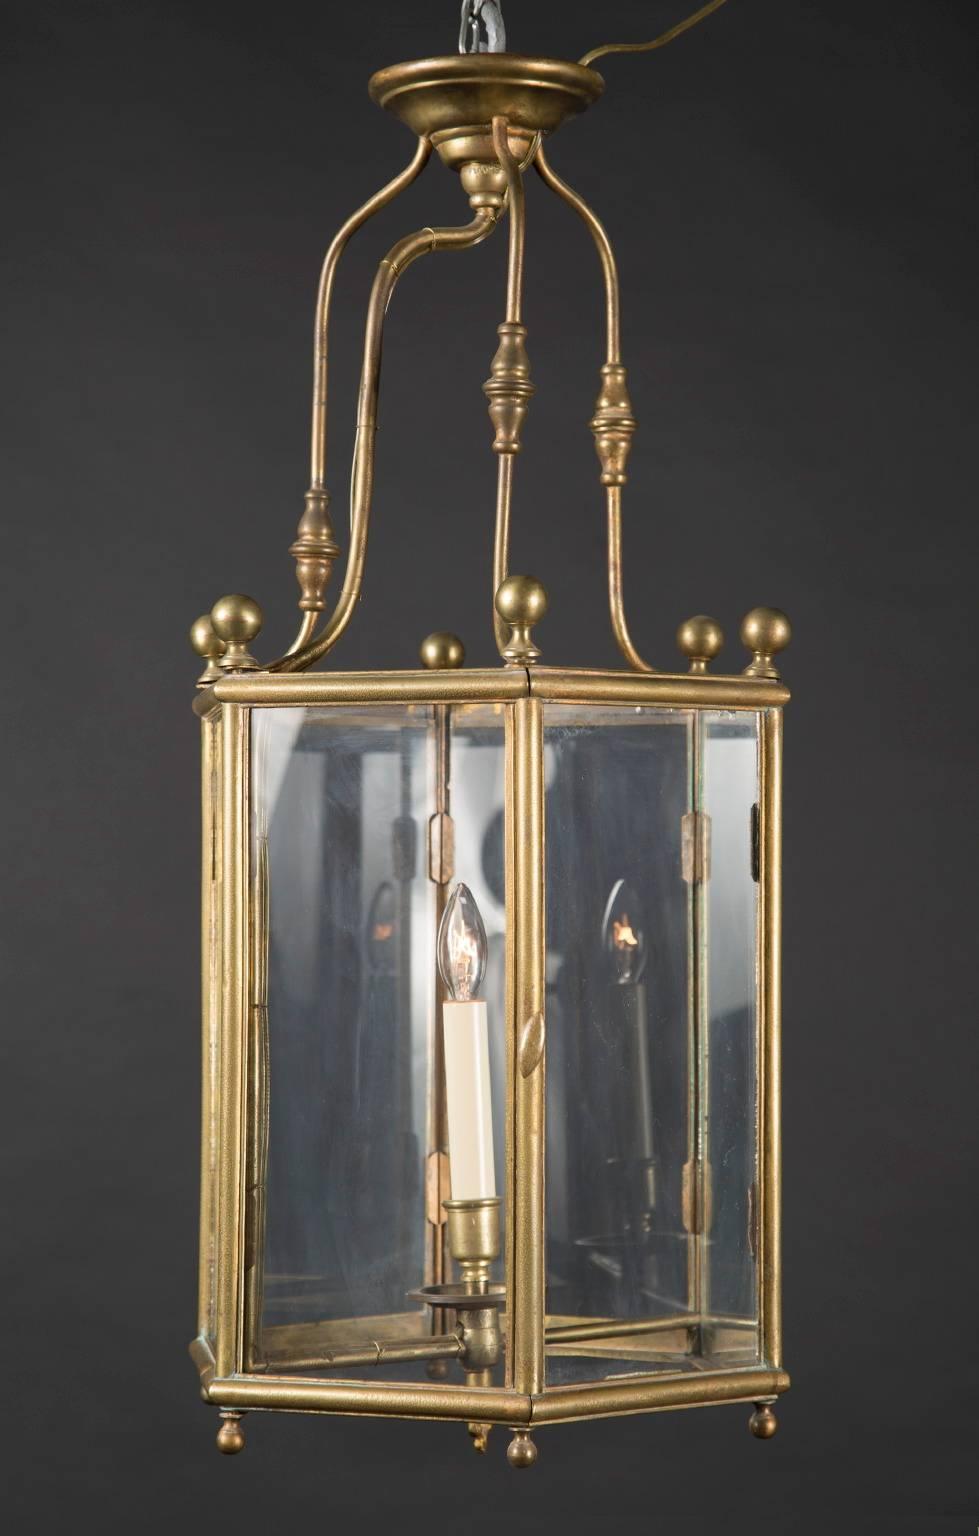 Diese sechseckige Laterne im Louis XVI-Stil ist aus Messing gefertigt und verfügt über eine Tür und ein Innenlicht. Das antike französische Stück stammt aus dem 19. Jahrhundert und ist an jeder Ecke des Deckels mit einem Knauf verziert. Kleinere